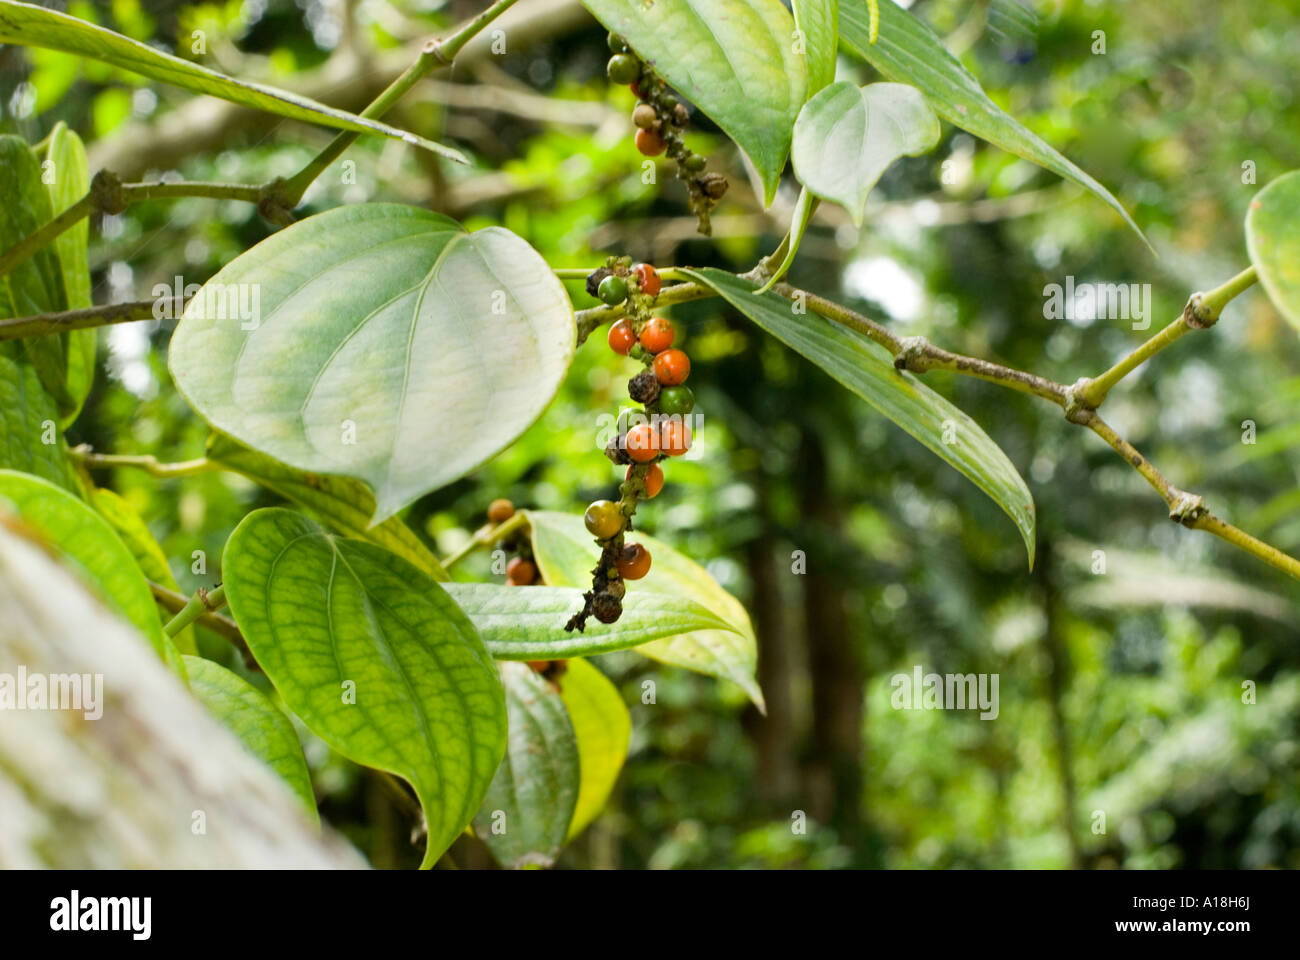 Peperoni pepe peppe impianto di frutta rossa fresca verde arbusto panicle pepe nero Foto Stock